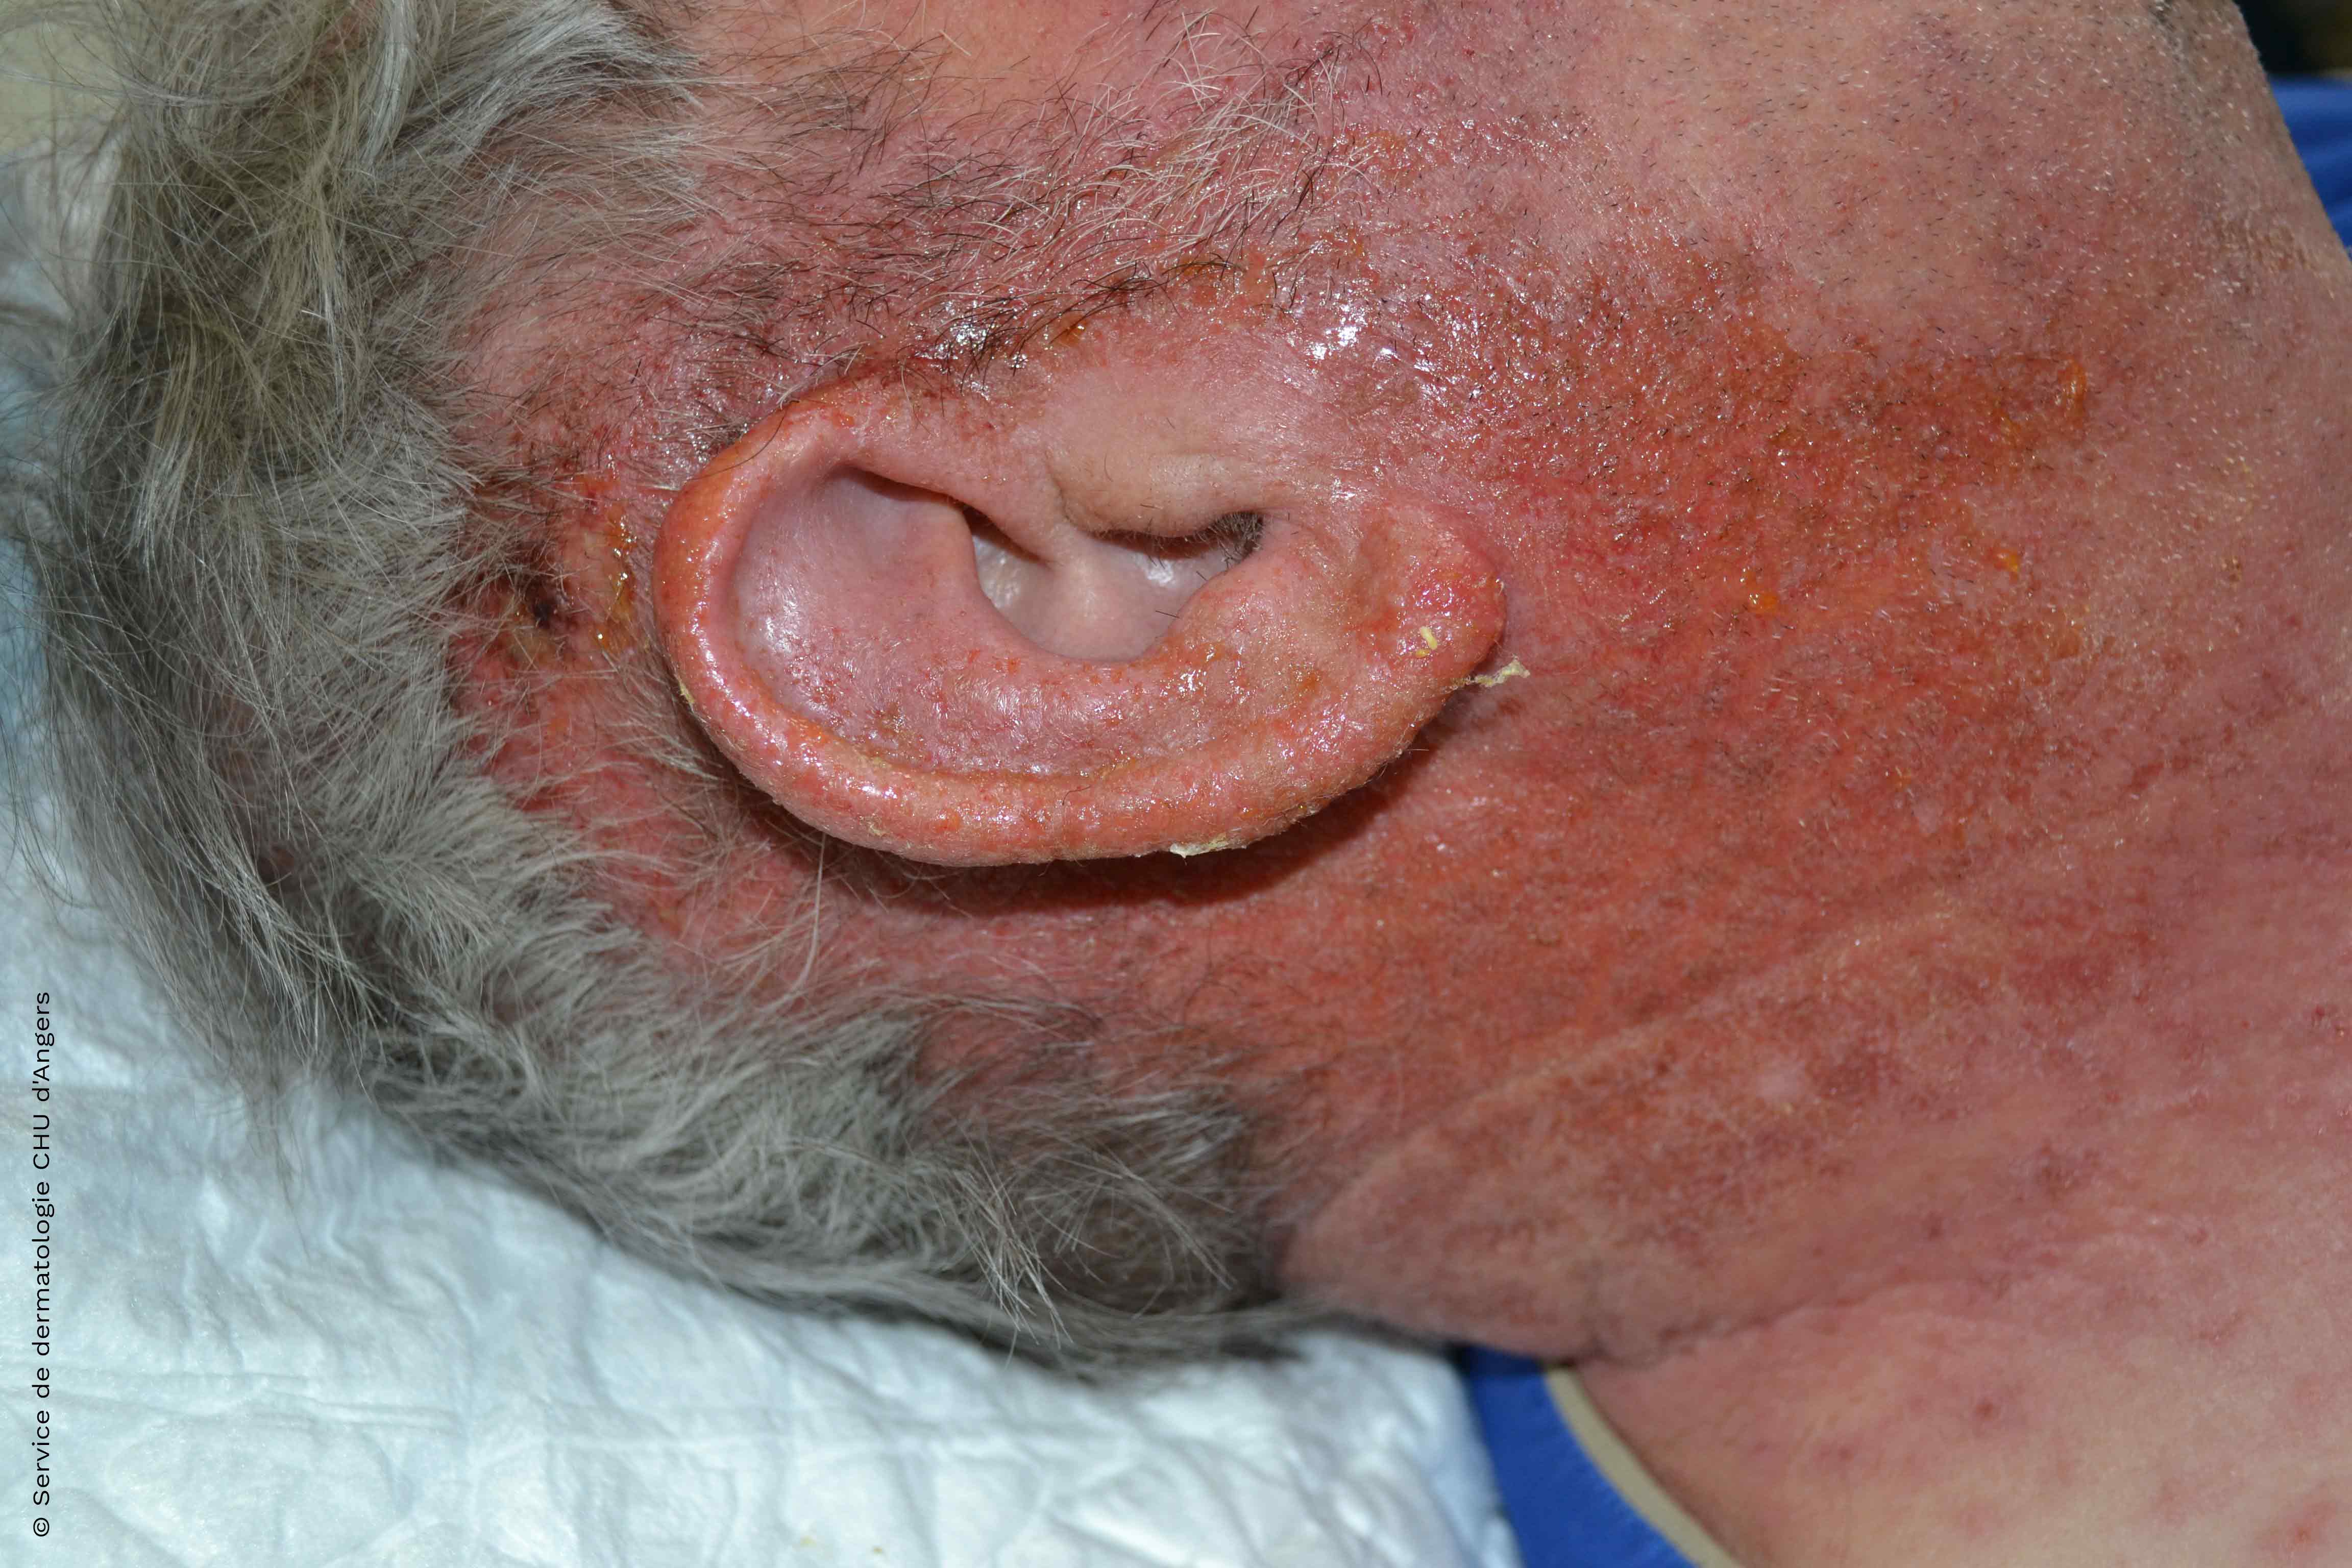 Acute contact ear eczema